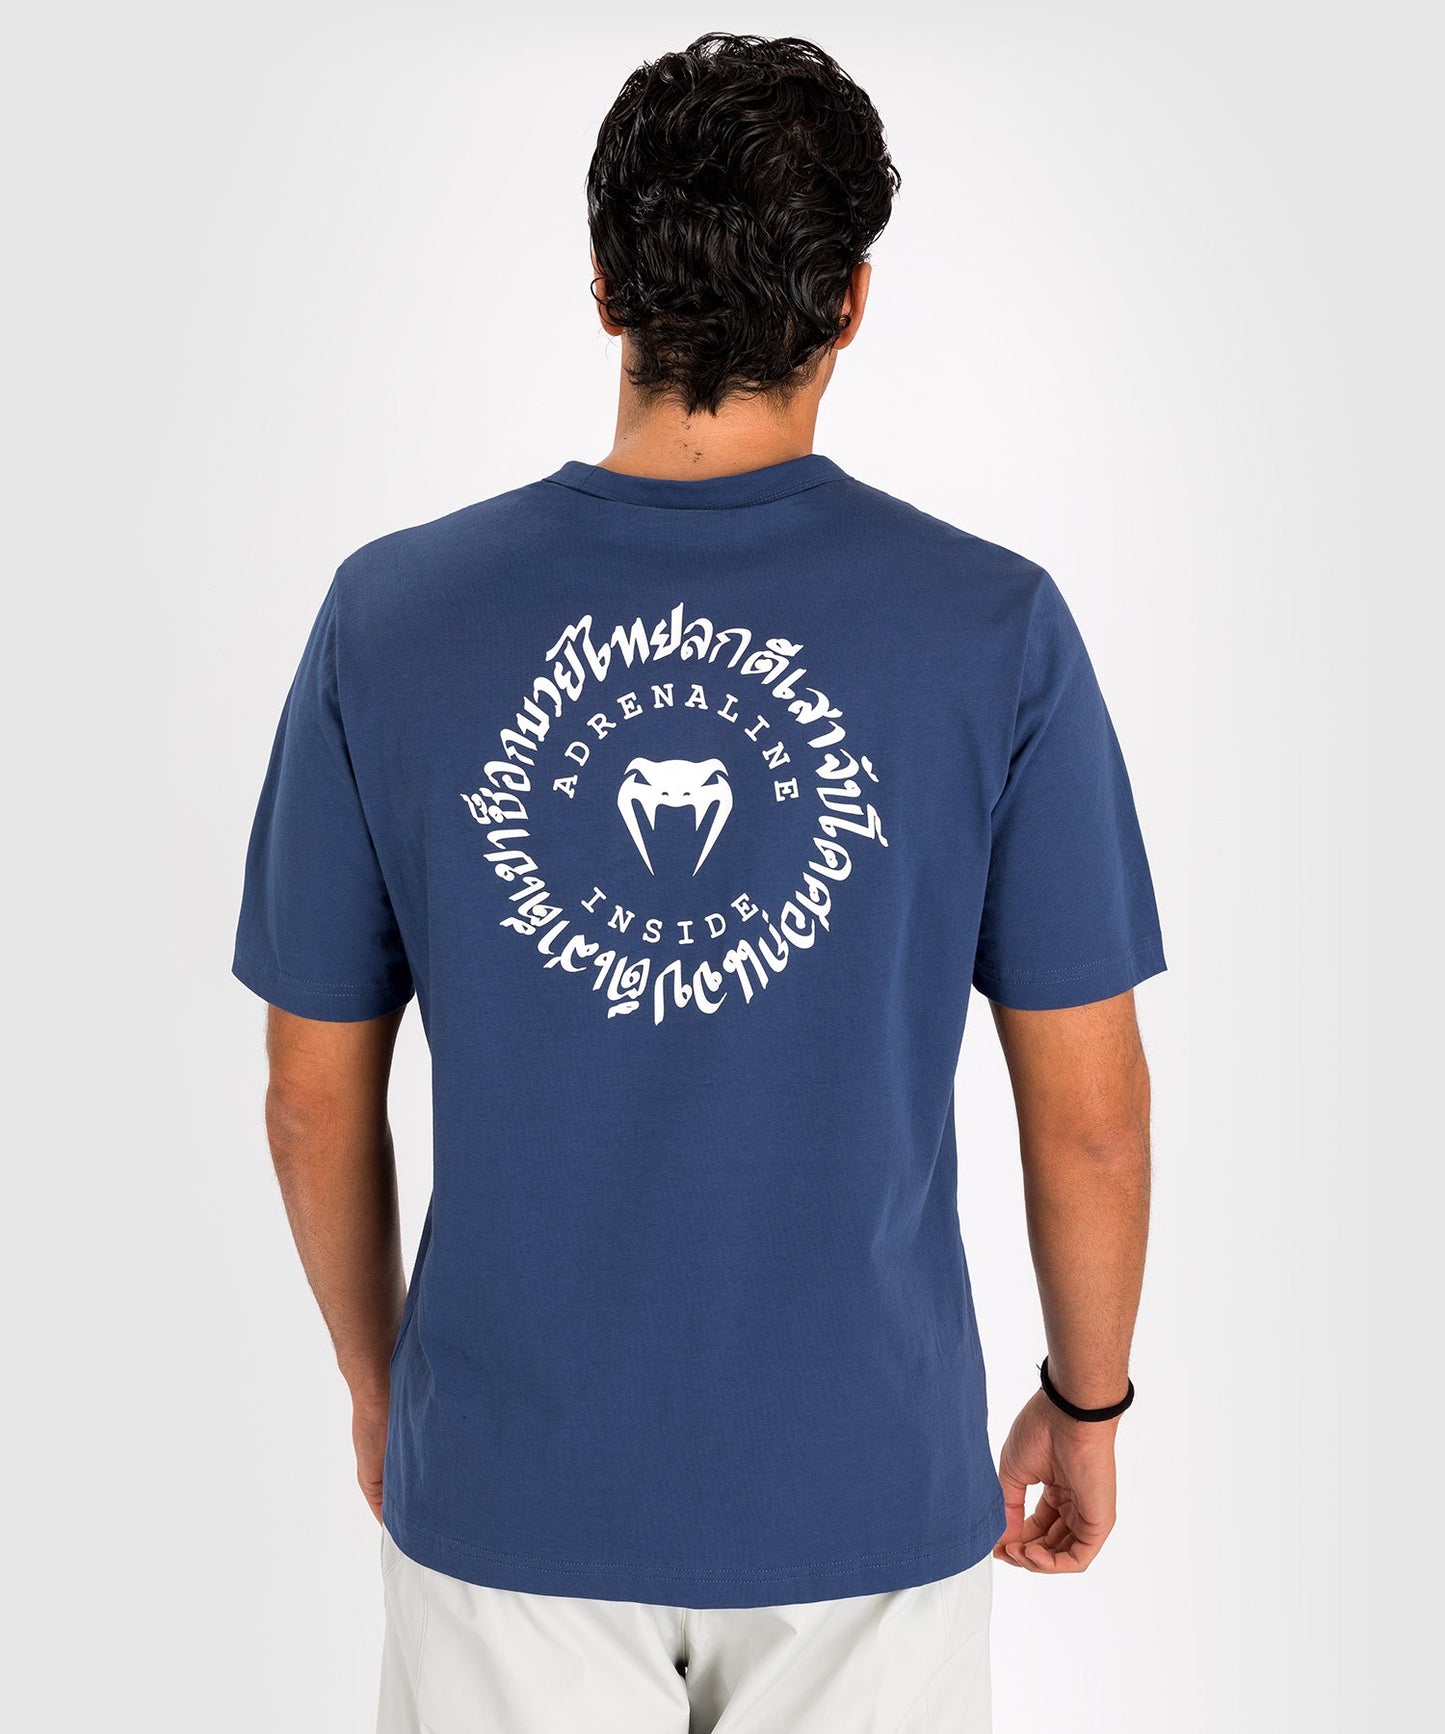 Venum Strikeland T-Shirt - Marineblau